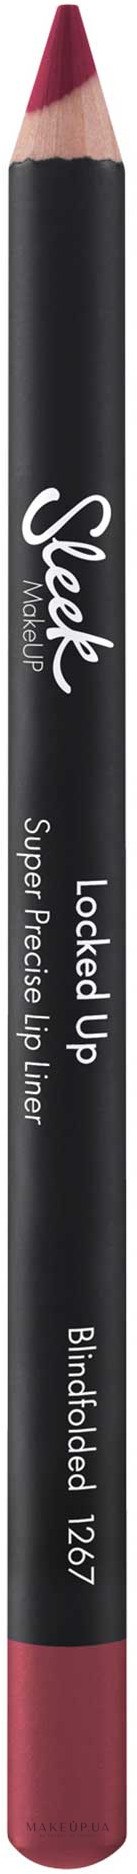 Олівець для губ - Sleek MakeUP Locked Up Super Precise Lip Liner — фото Blindfolded